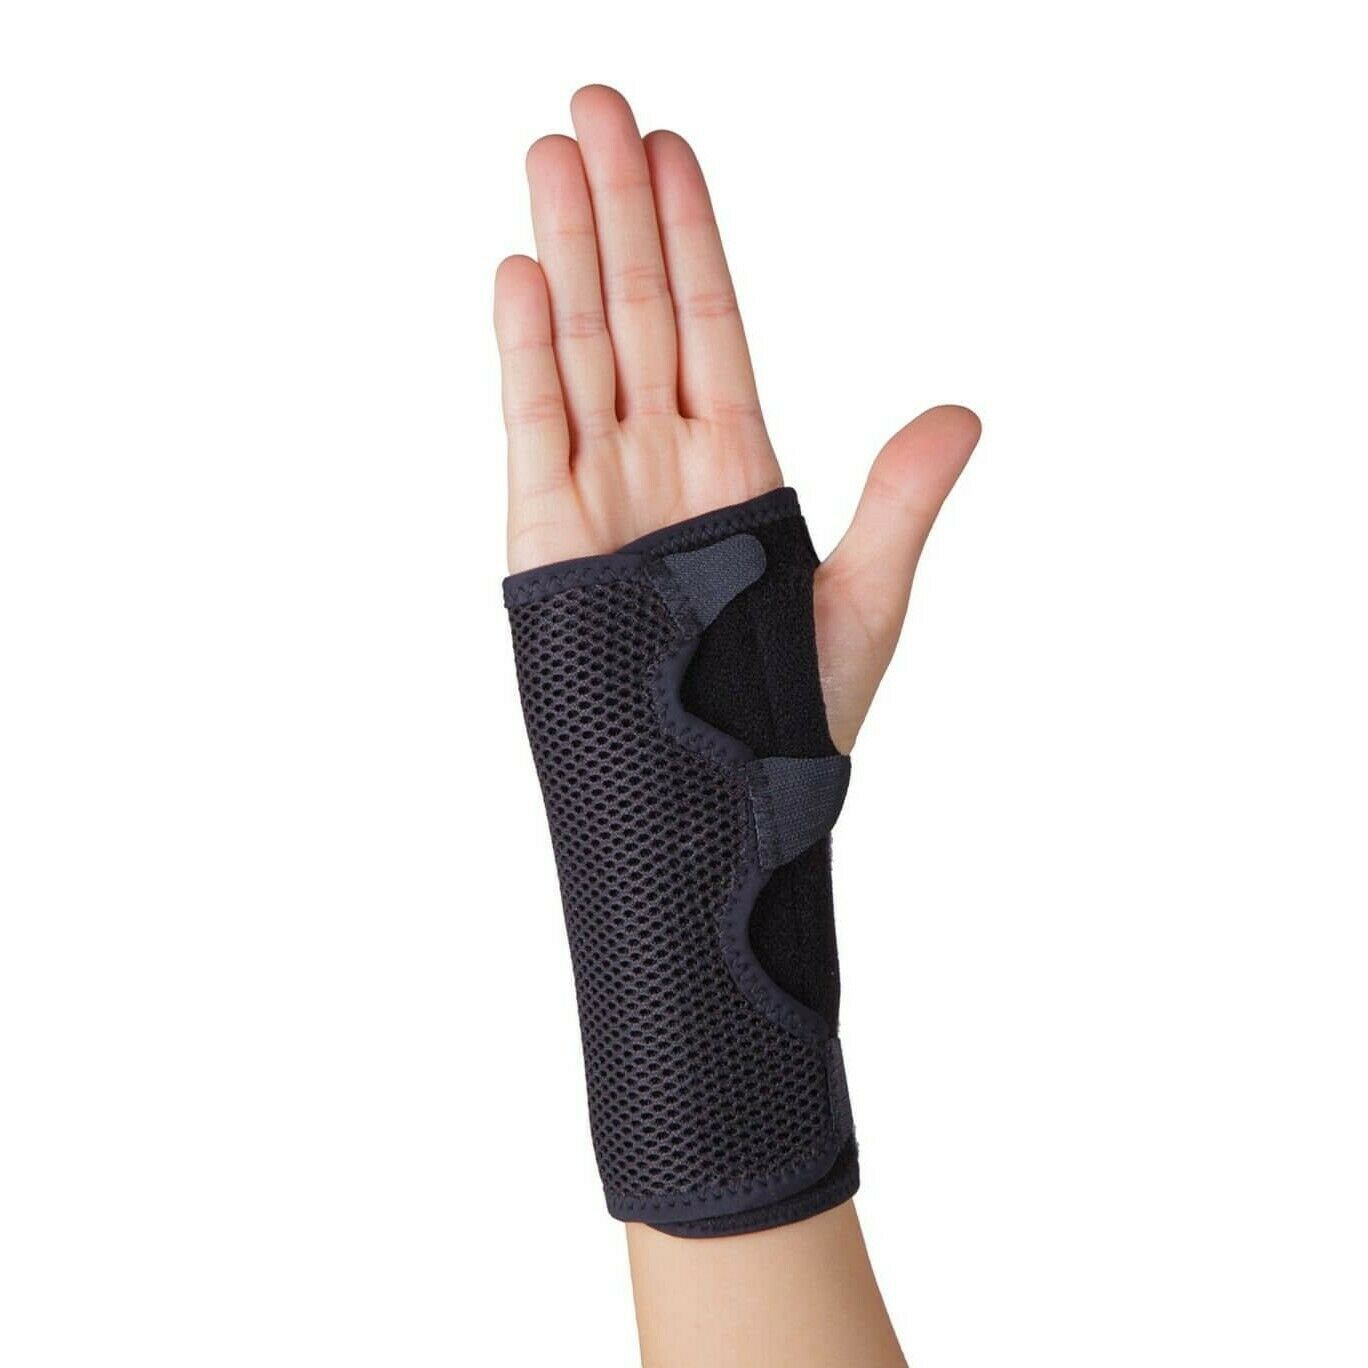 Ace Reversible Splint Wrist Brace